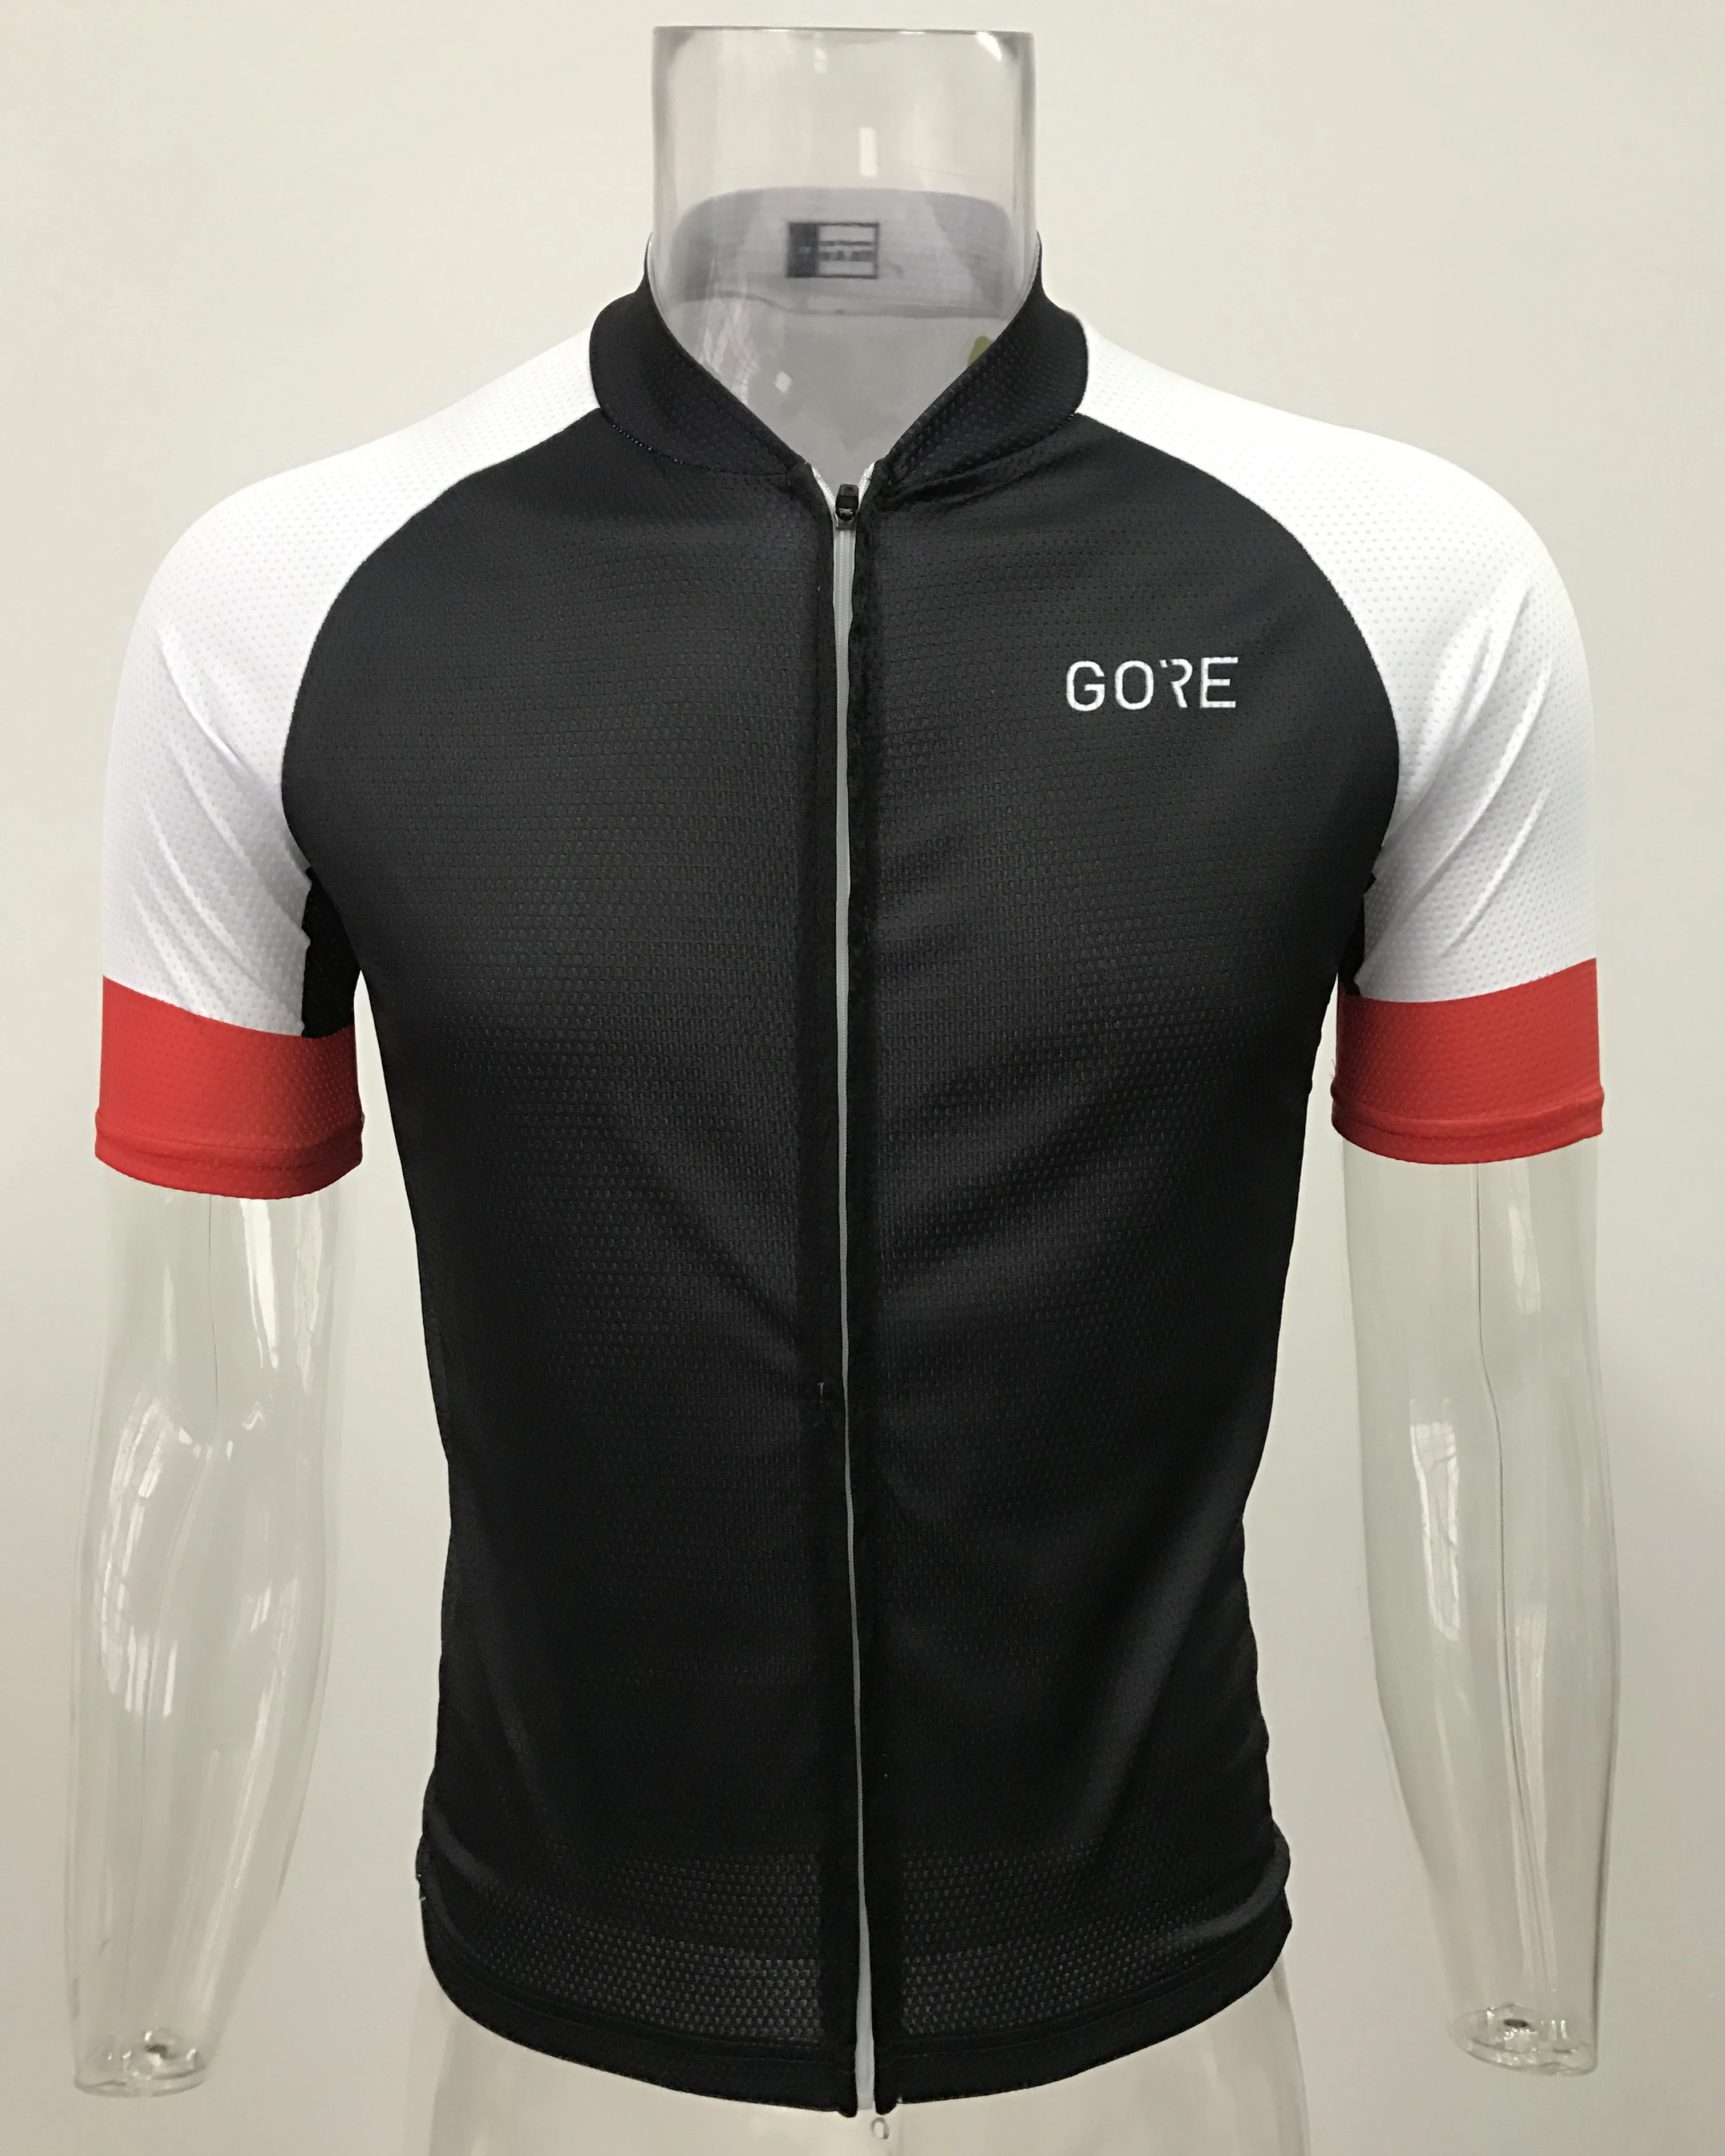 GORE Custom Аэро Велоспорт одежда для мужчин короткий рукав велосипедные костюмы дышащий Джерси дорожный велосипед Команда Bib шорты 9D набор велошорт